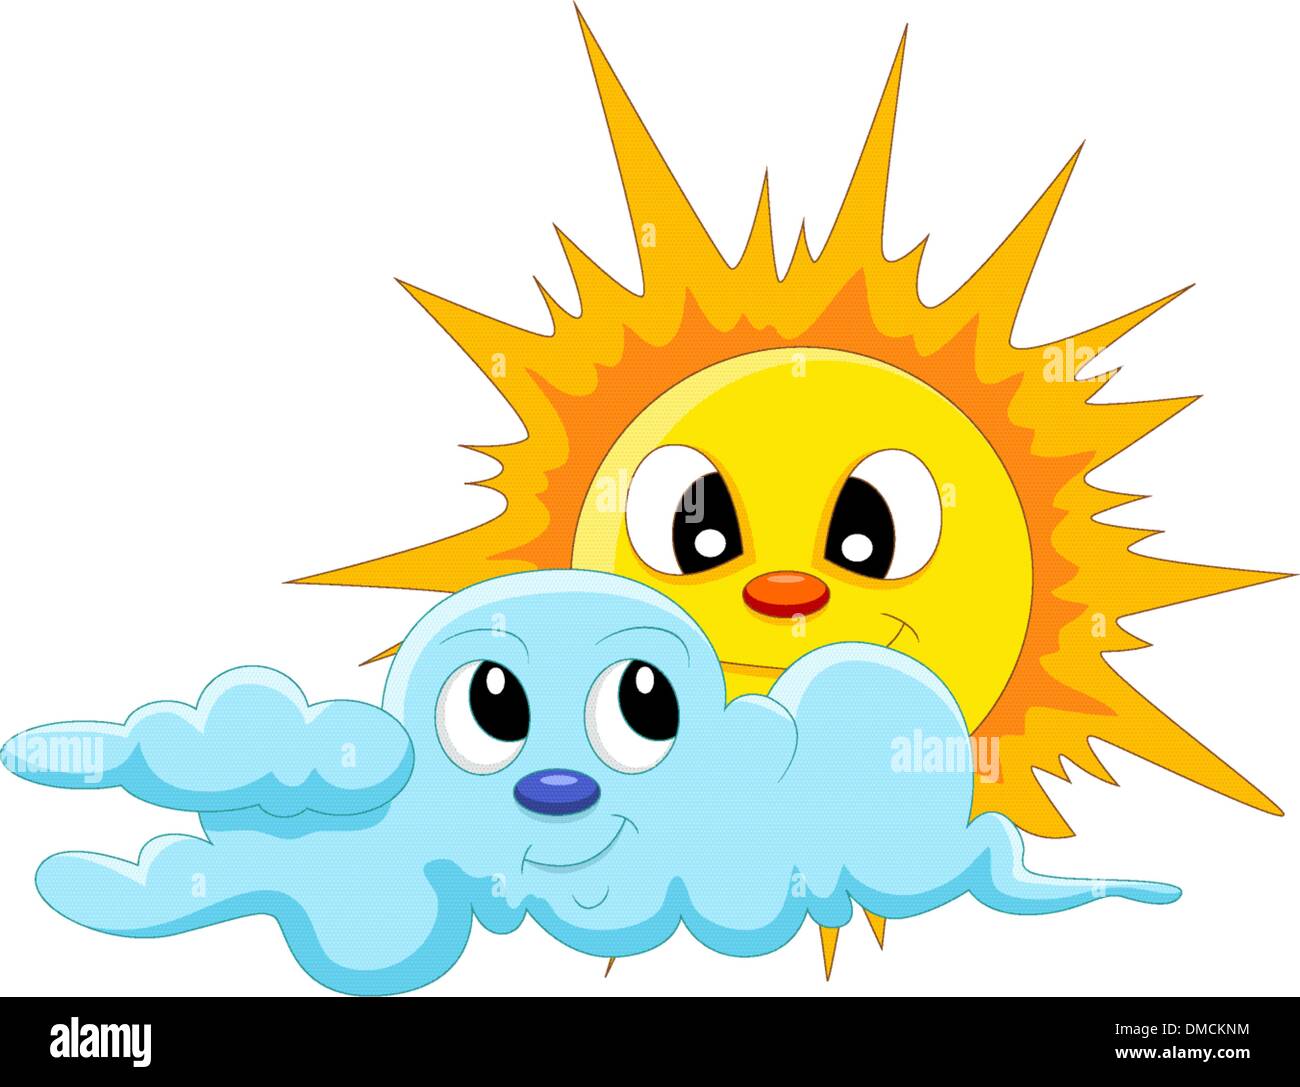 sun and cloud cartoon Stock Vector Image & Art - Alamy